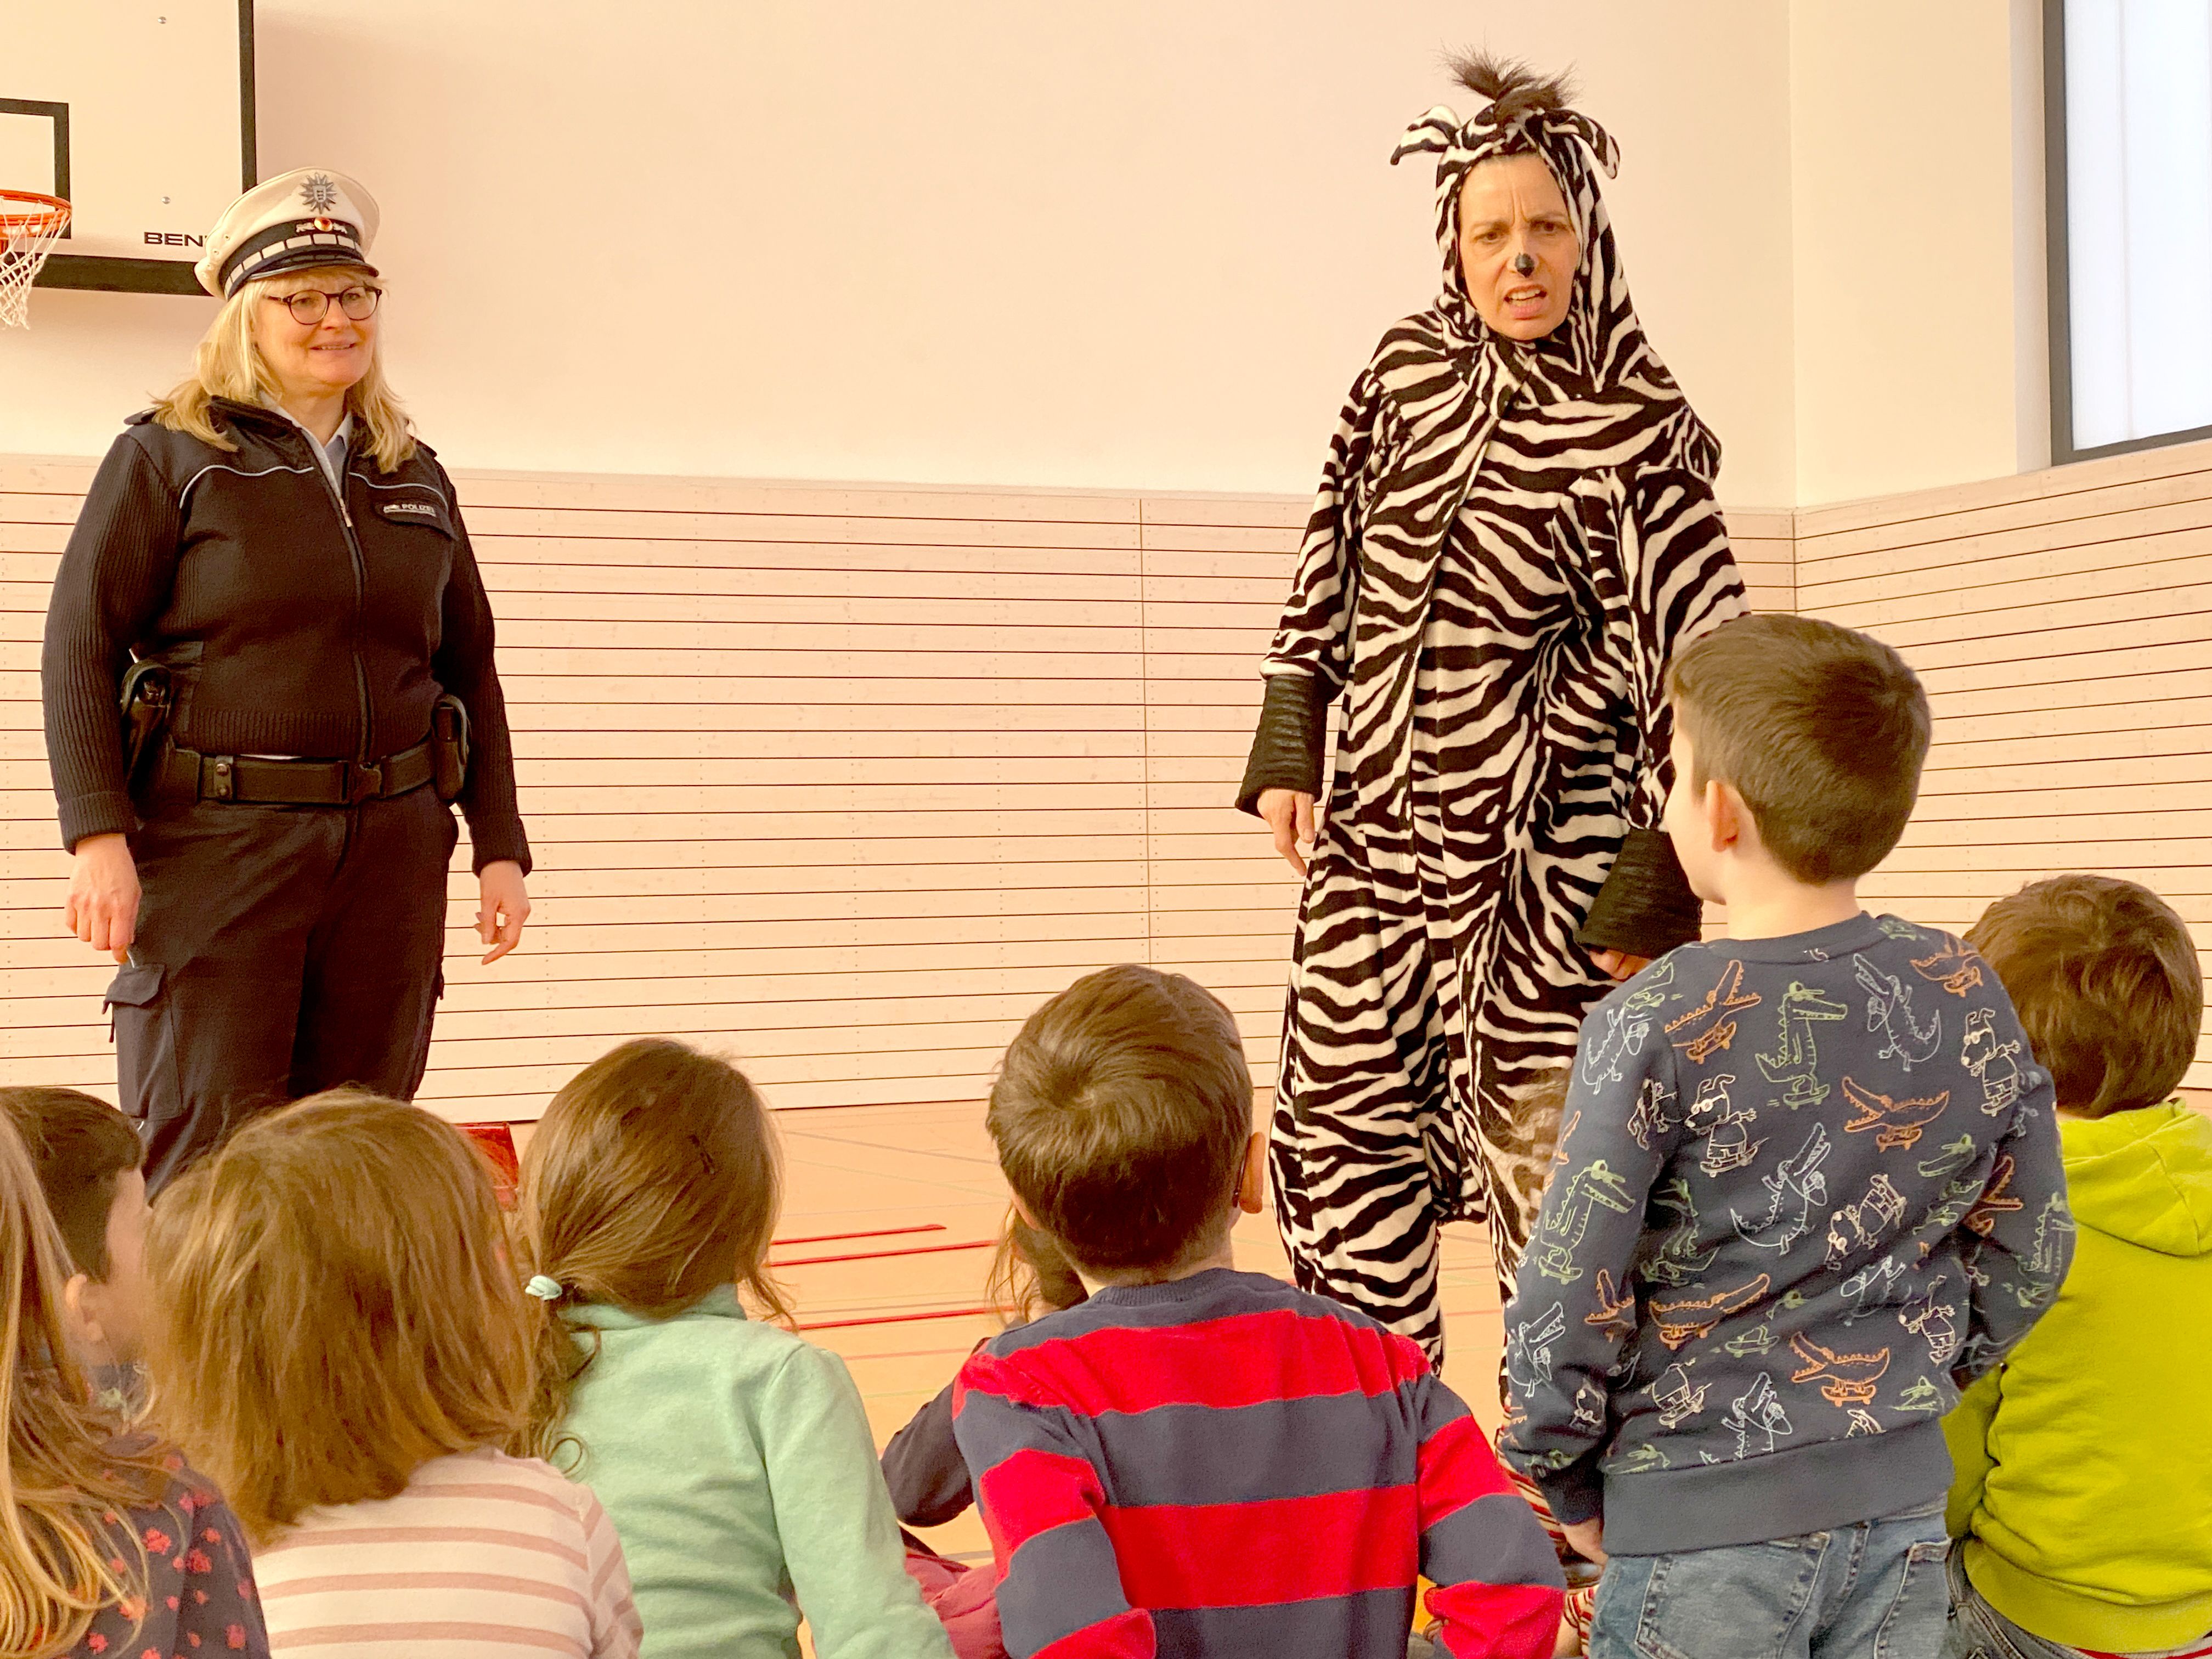 Eine Polizistin und eine, als Zebra verkleidete Schauspielerin stehen vor Publikum.